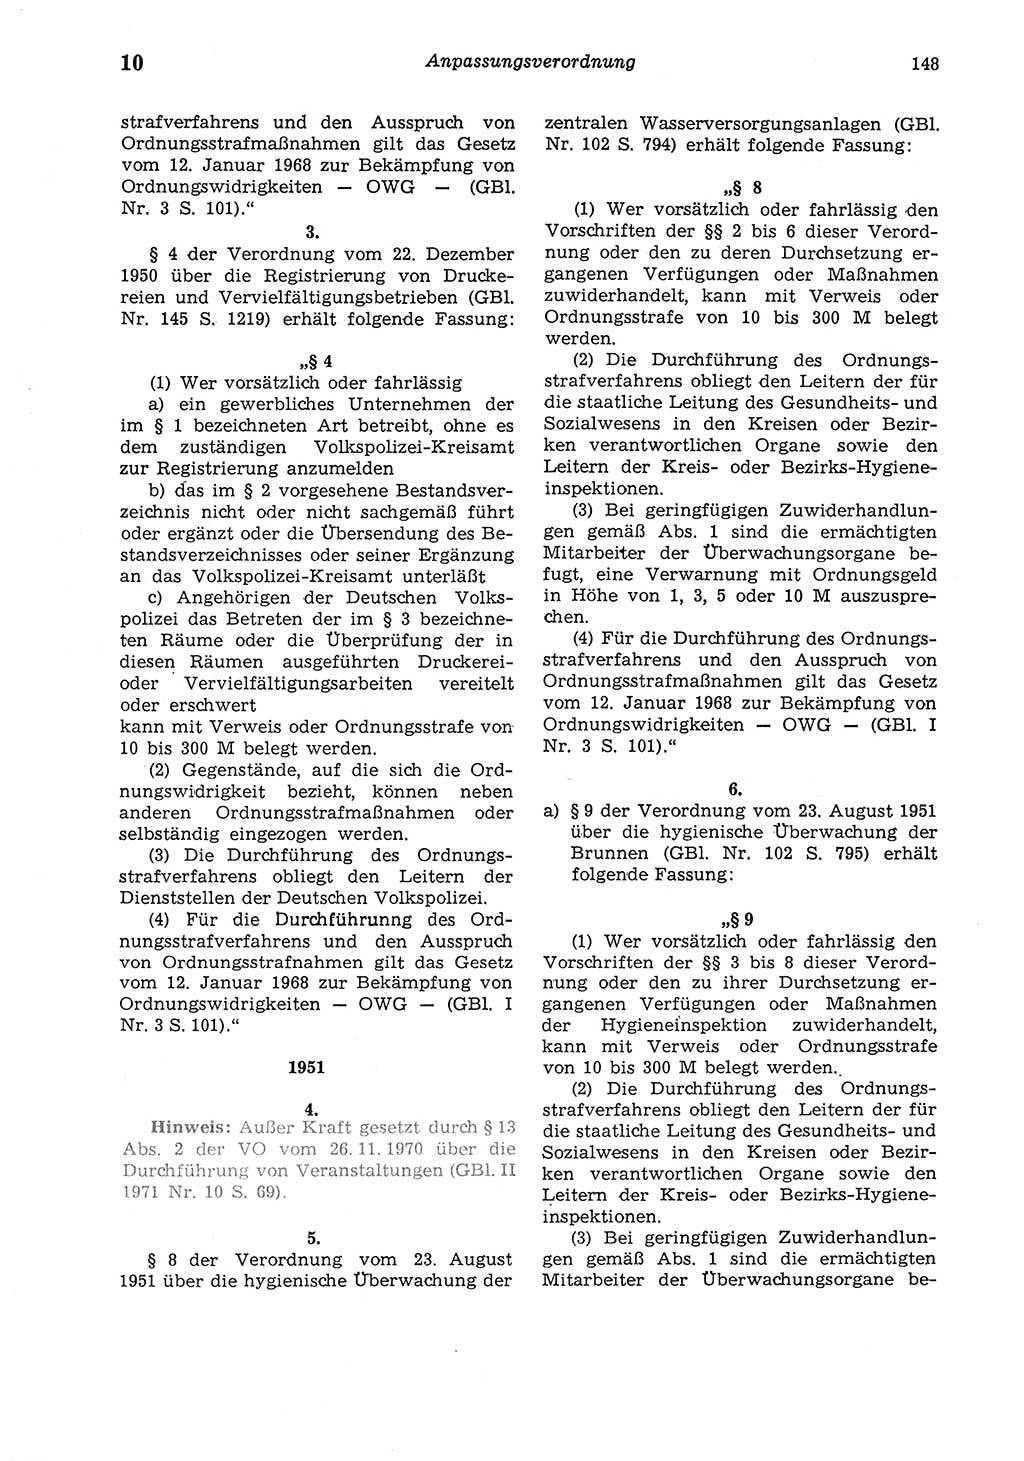 Strafgesetzbuch (StGB) der Deutschen Demokratischen Republik (DDR) und angrenzende Gesetze und Bestimmungen 1975, Seite 148 (StGB DDR Ges. Best. 1975, S. 148)